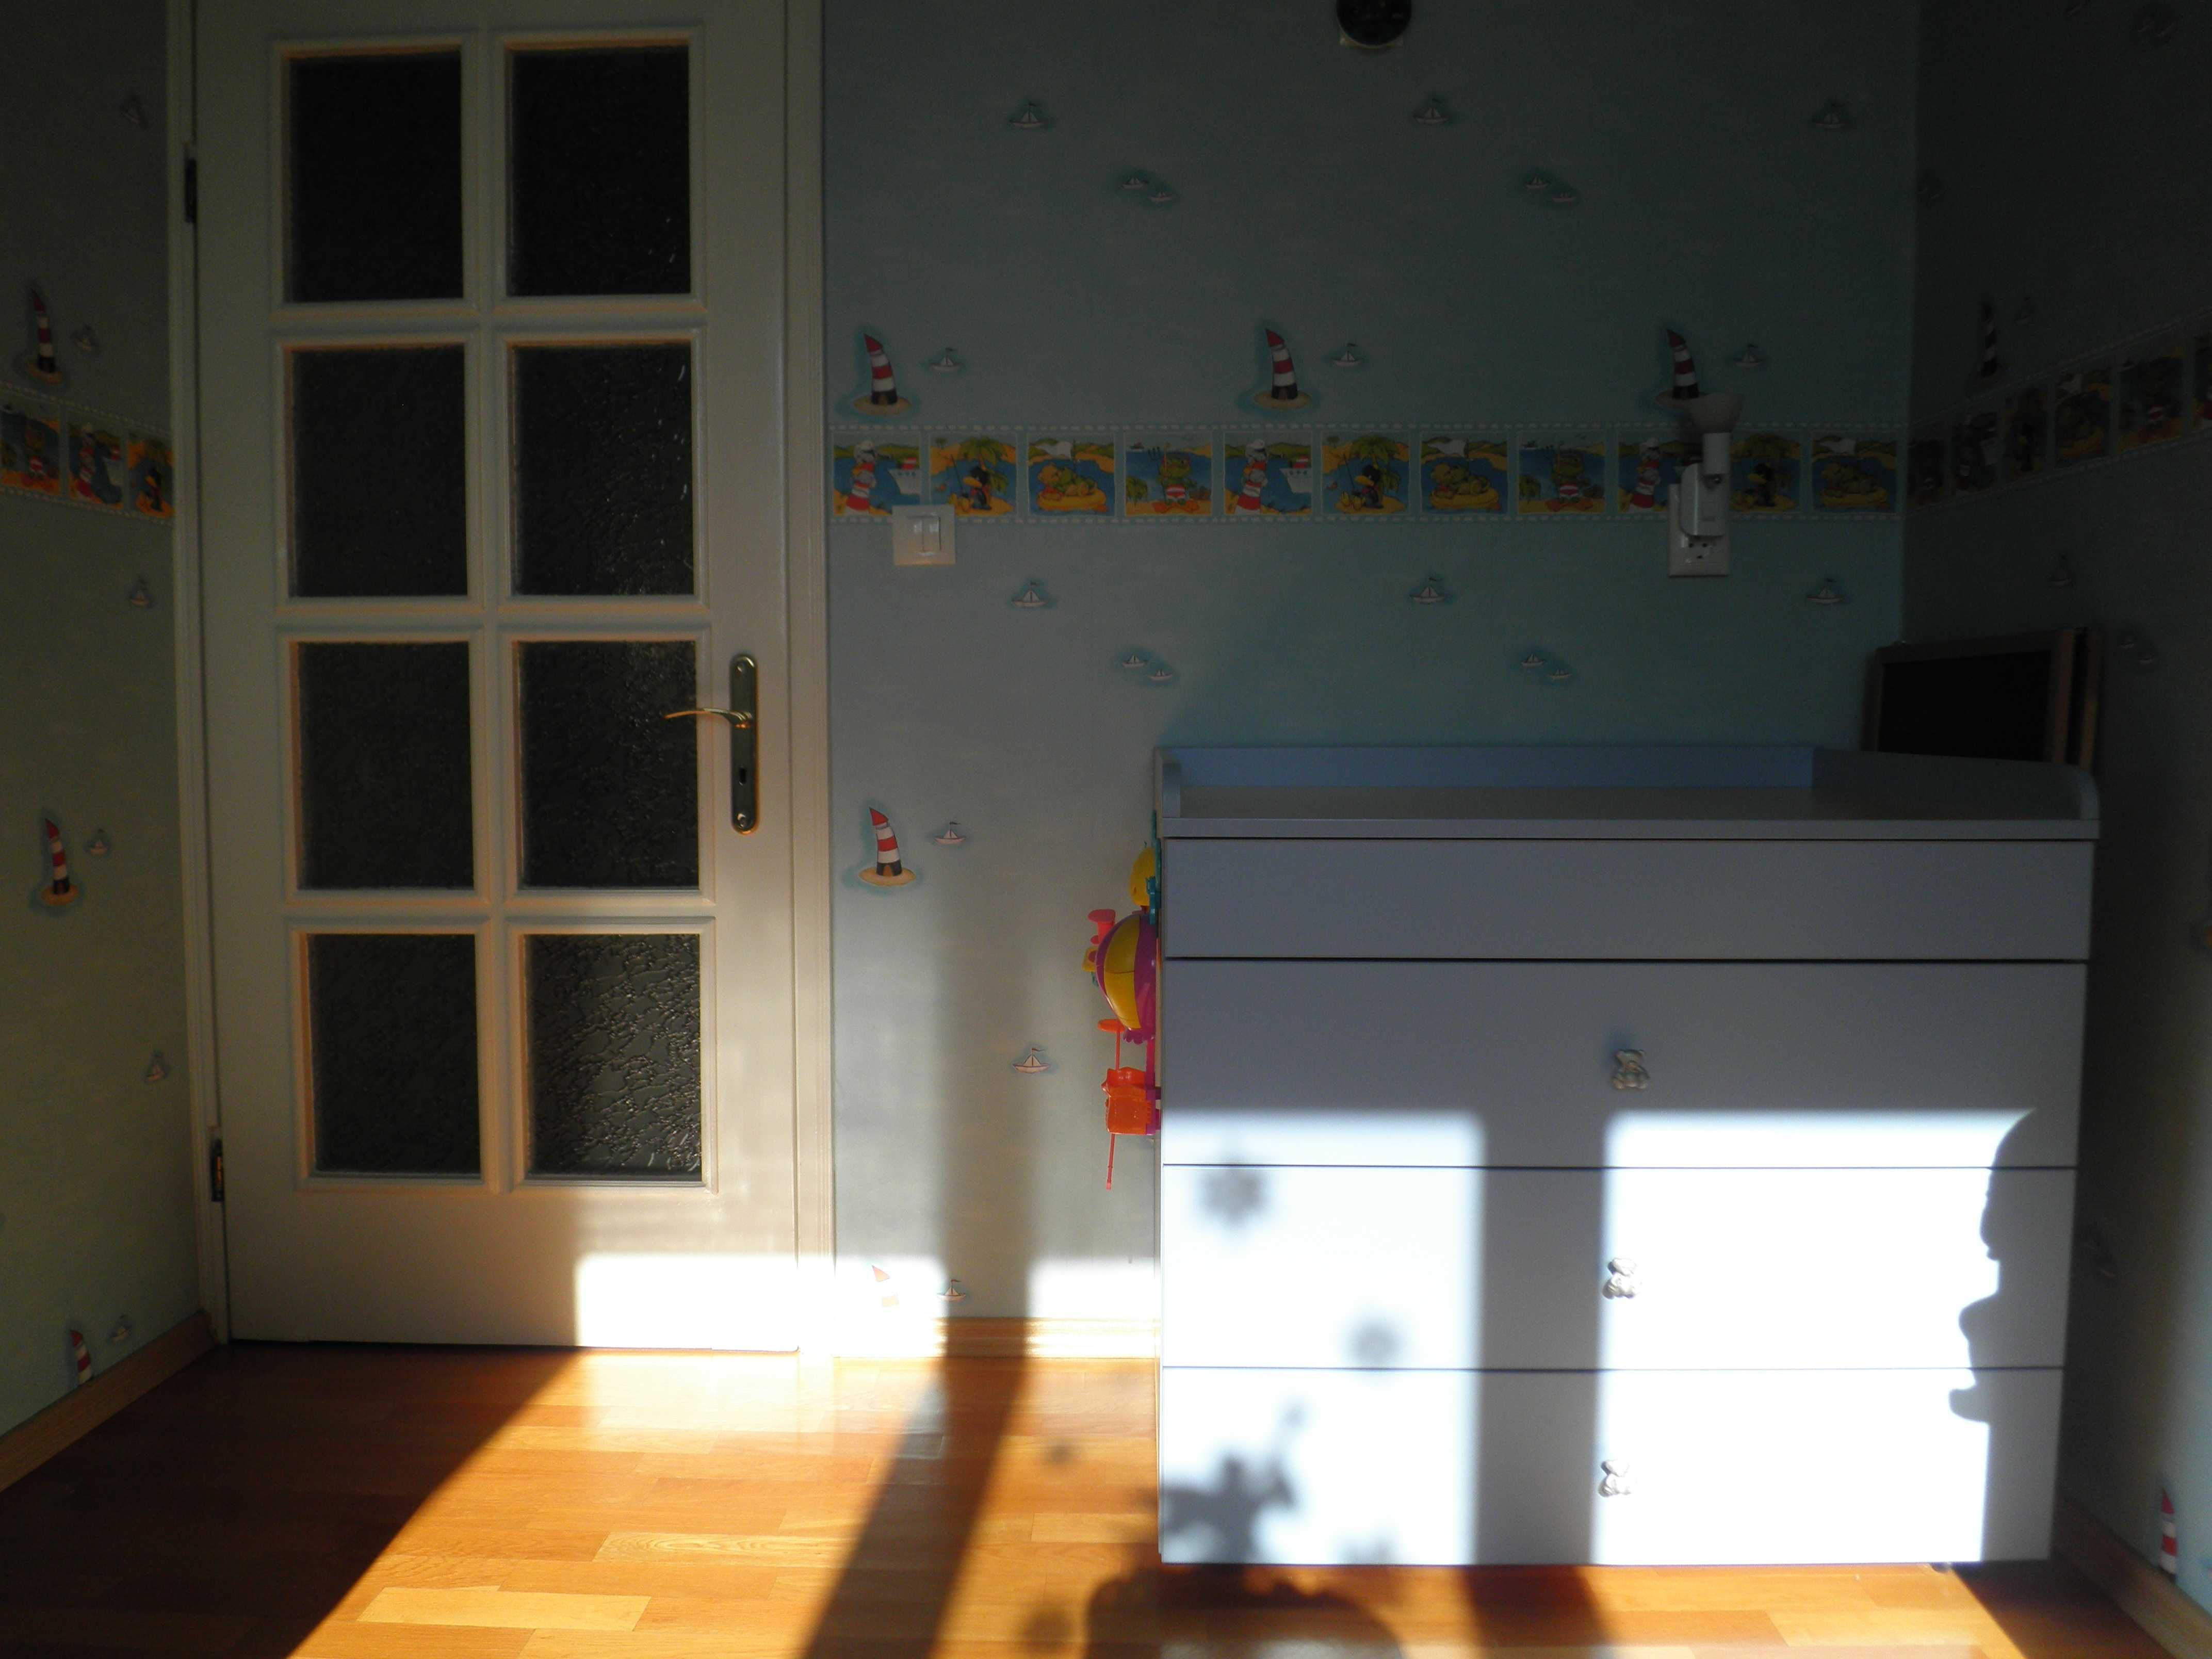 Детска стая 12 кв. м. - пълно обзавеждане